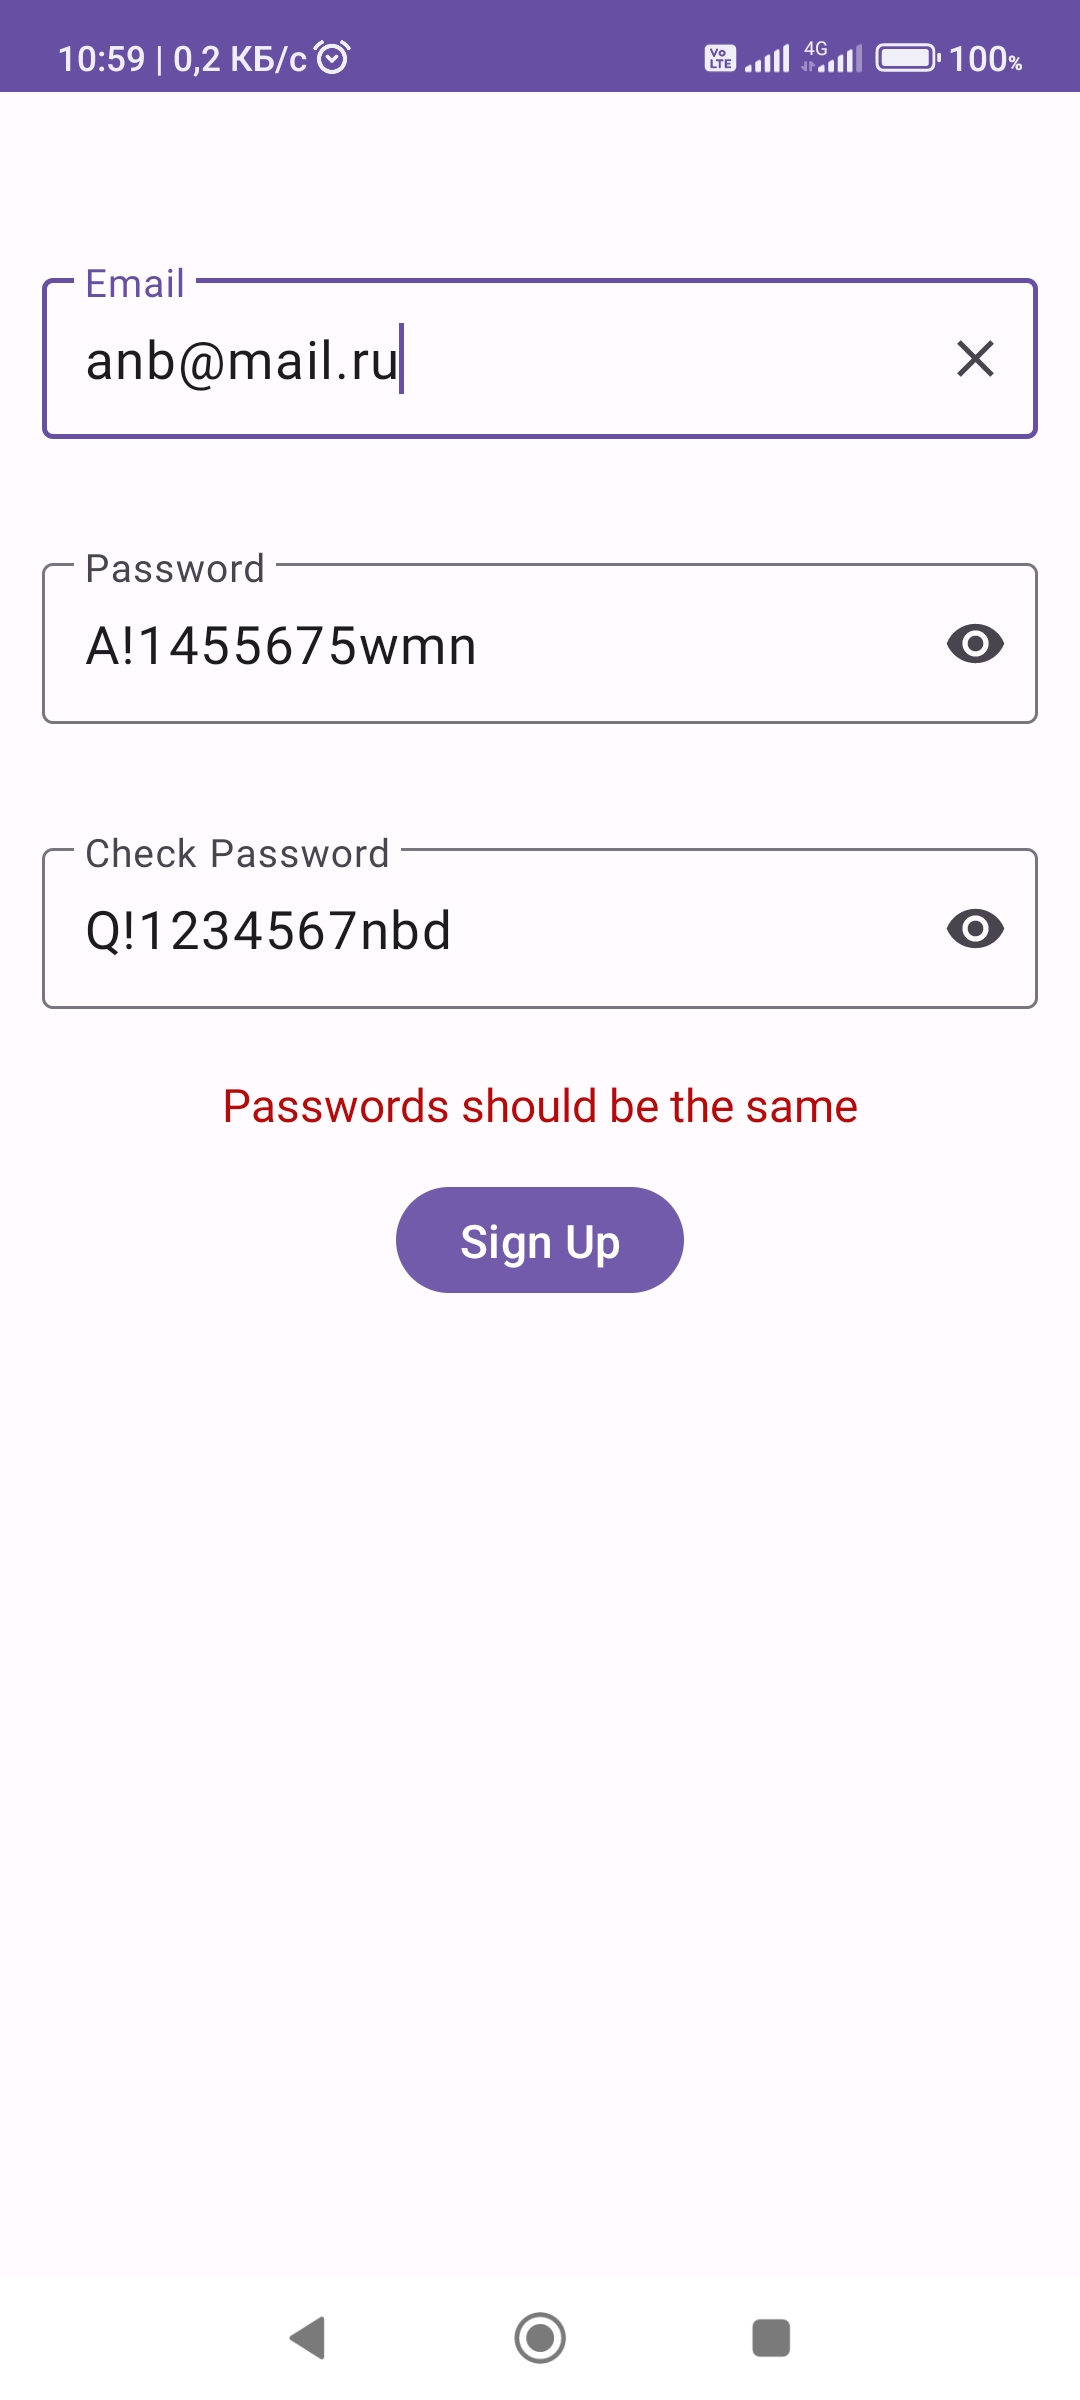 Если пароли не совпадают, появляется надпись и регистрация не происходит